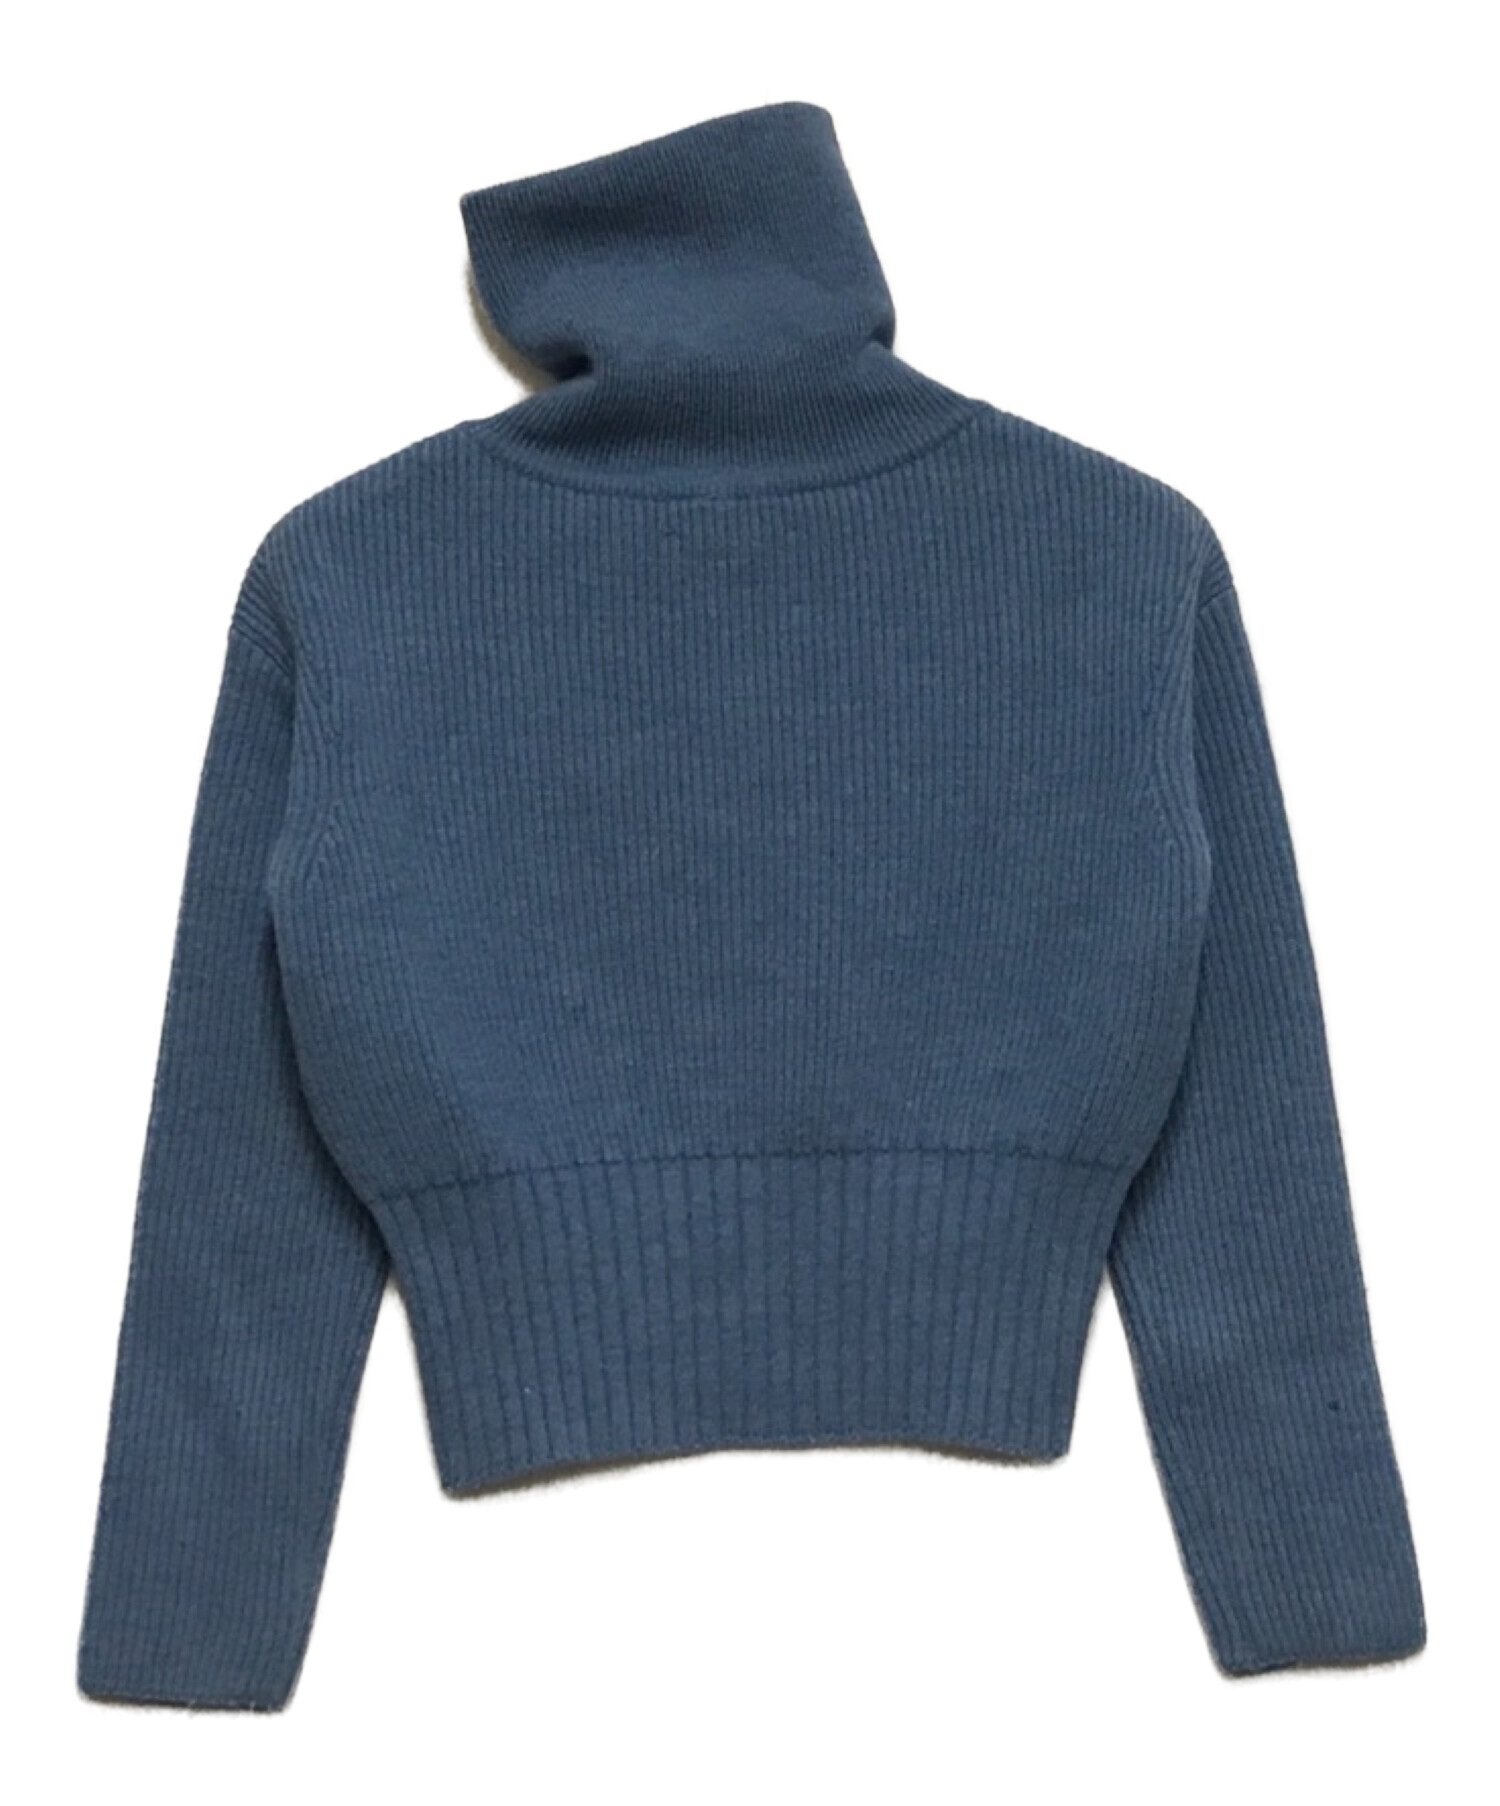 teloplan / ito coller sweater